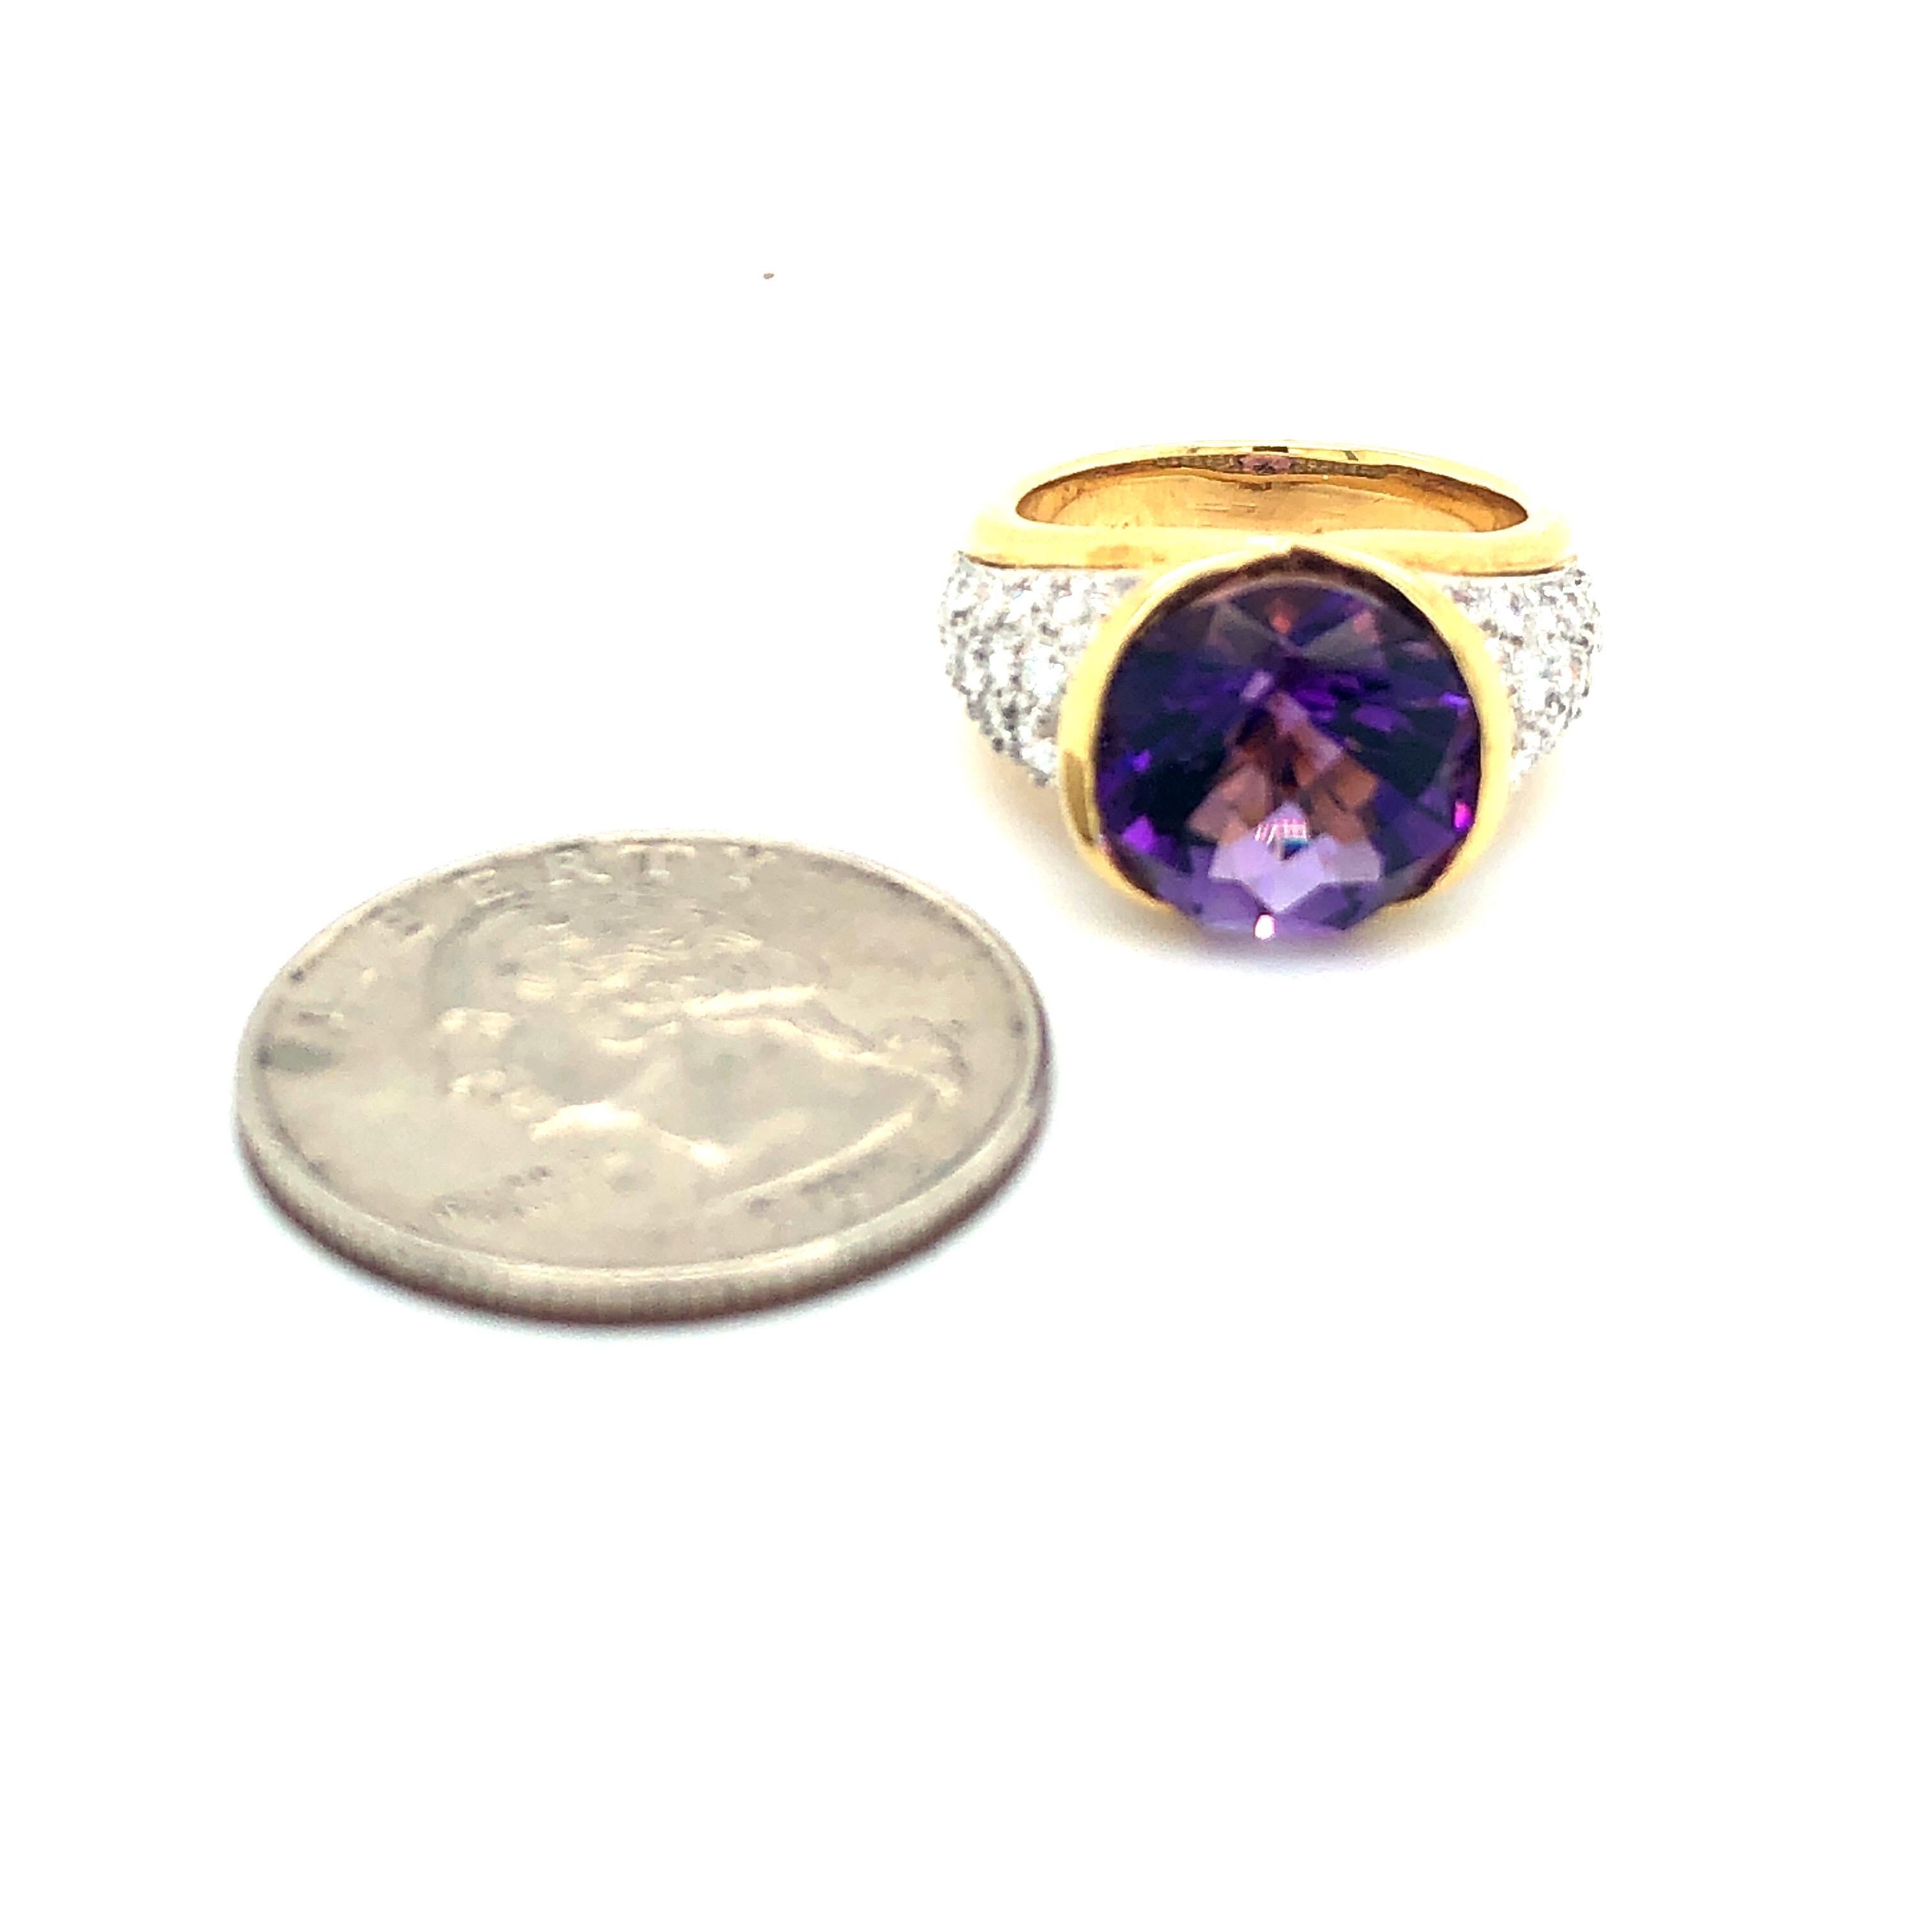 Schöne Platin und Gelbgold und Diamant Facettierte Oval Amethyst Größe 6 Ring.  Gestempelt Plat und 750.   